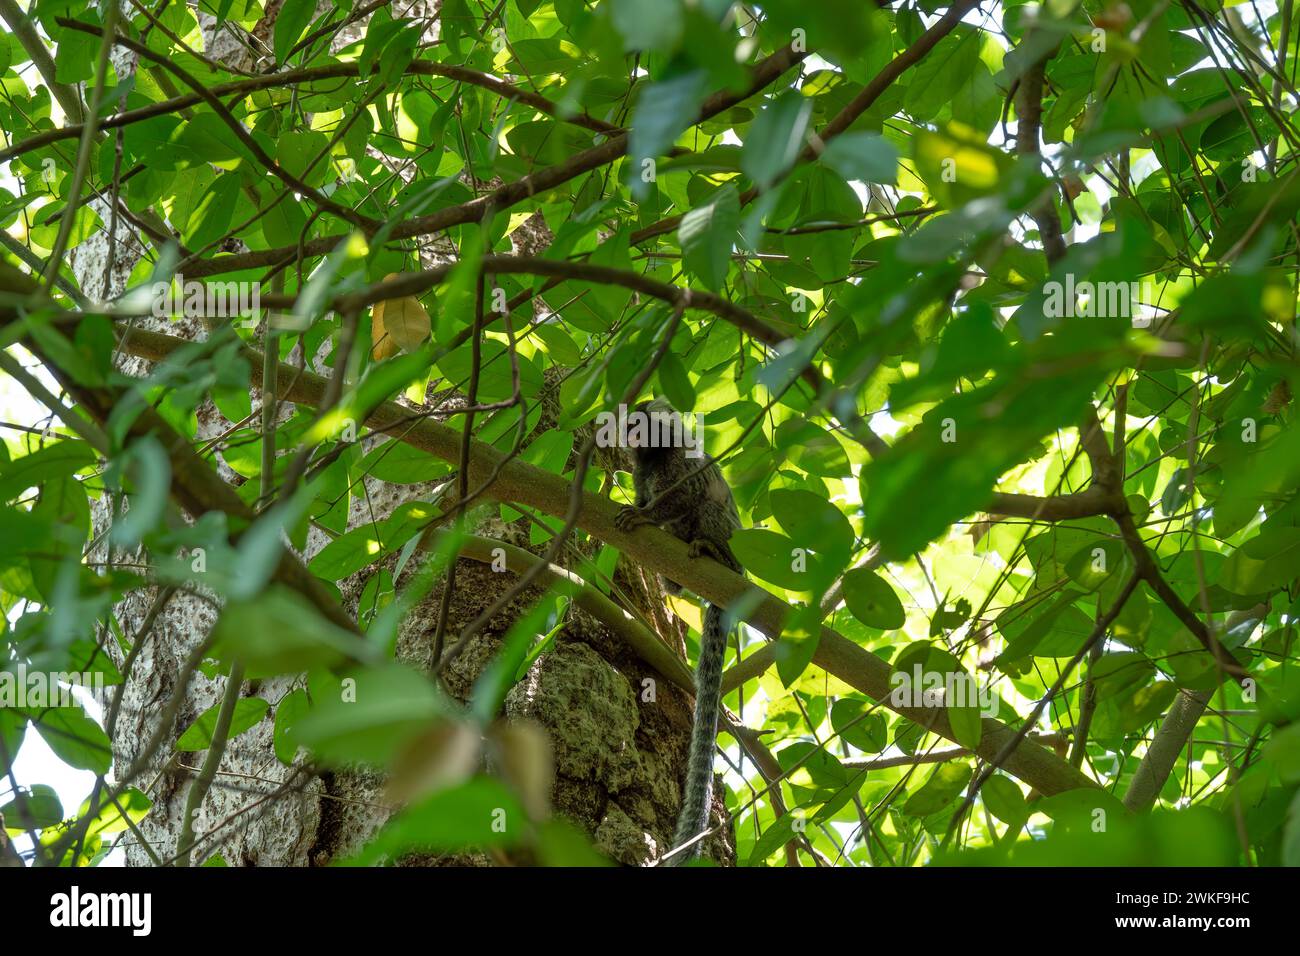 marmoset touffeté noir assis sur une branche dans un arbre Banque D'Images